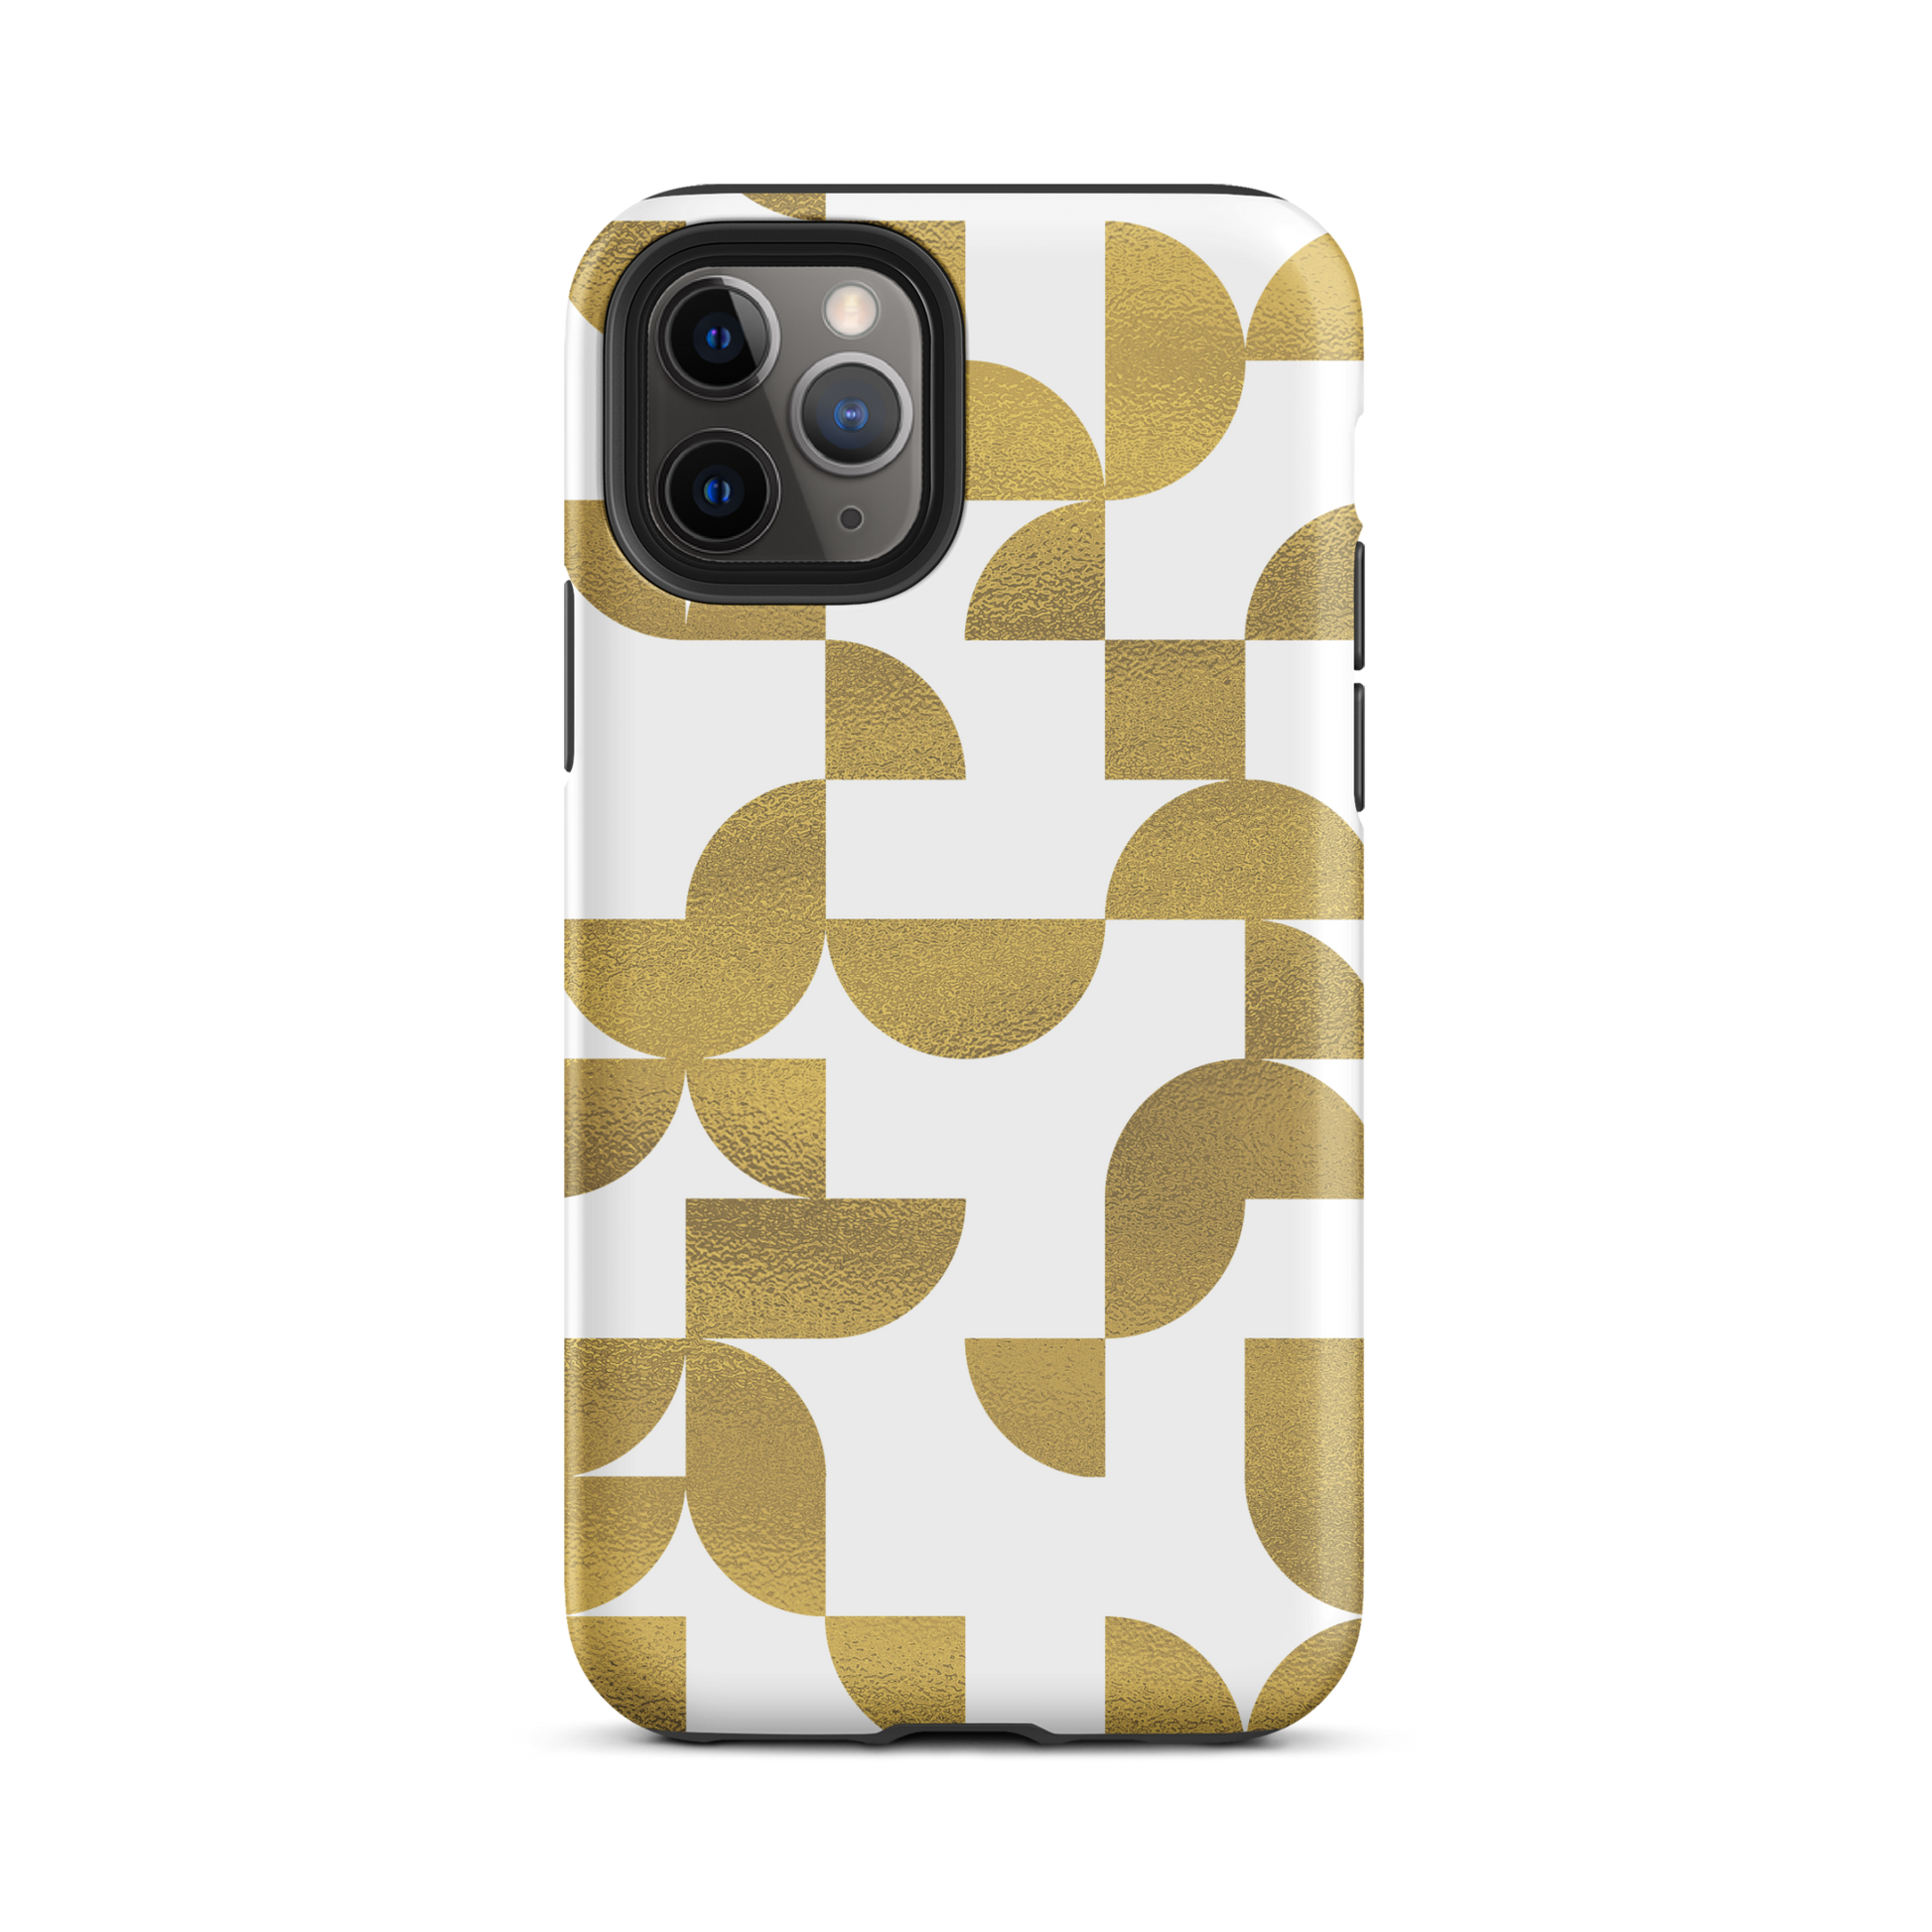 iPhone 11 pro tough case in Geometria I gold design